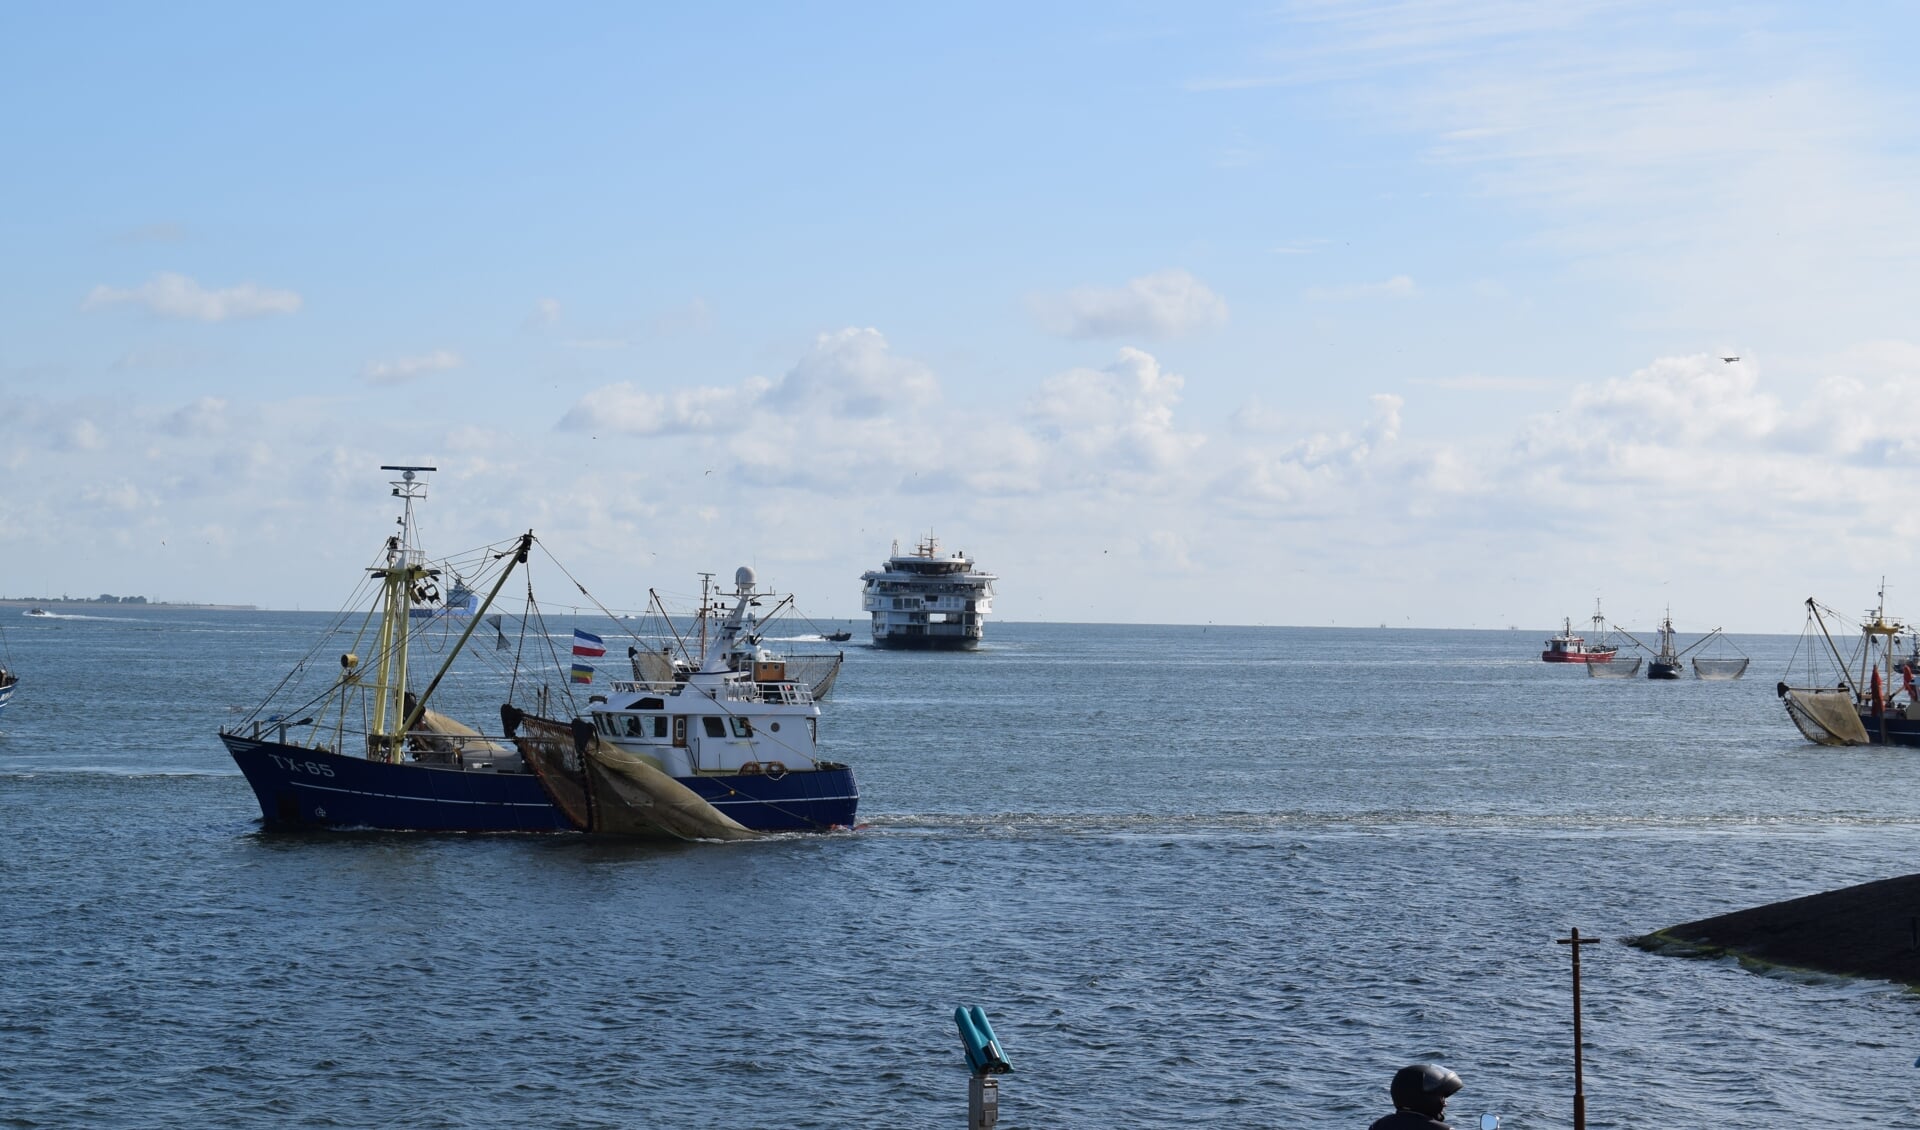 De vissers verlaten de havenmond, de Texelstroom is in aantocht, de actie wordt beëindigd